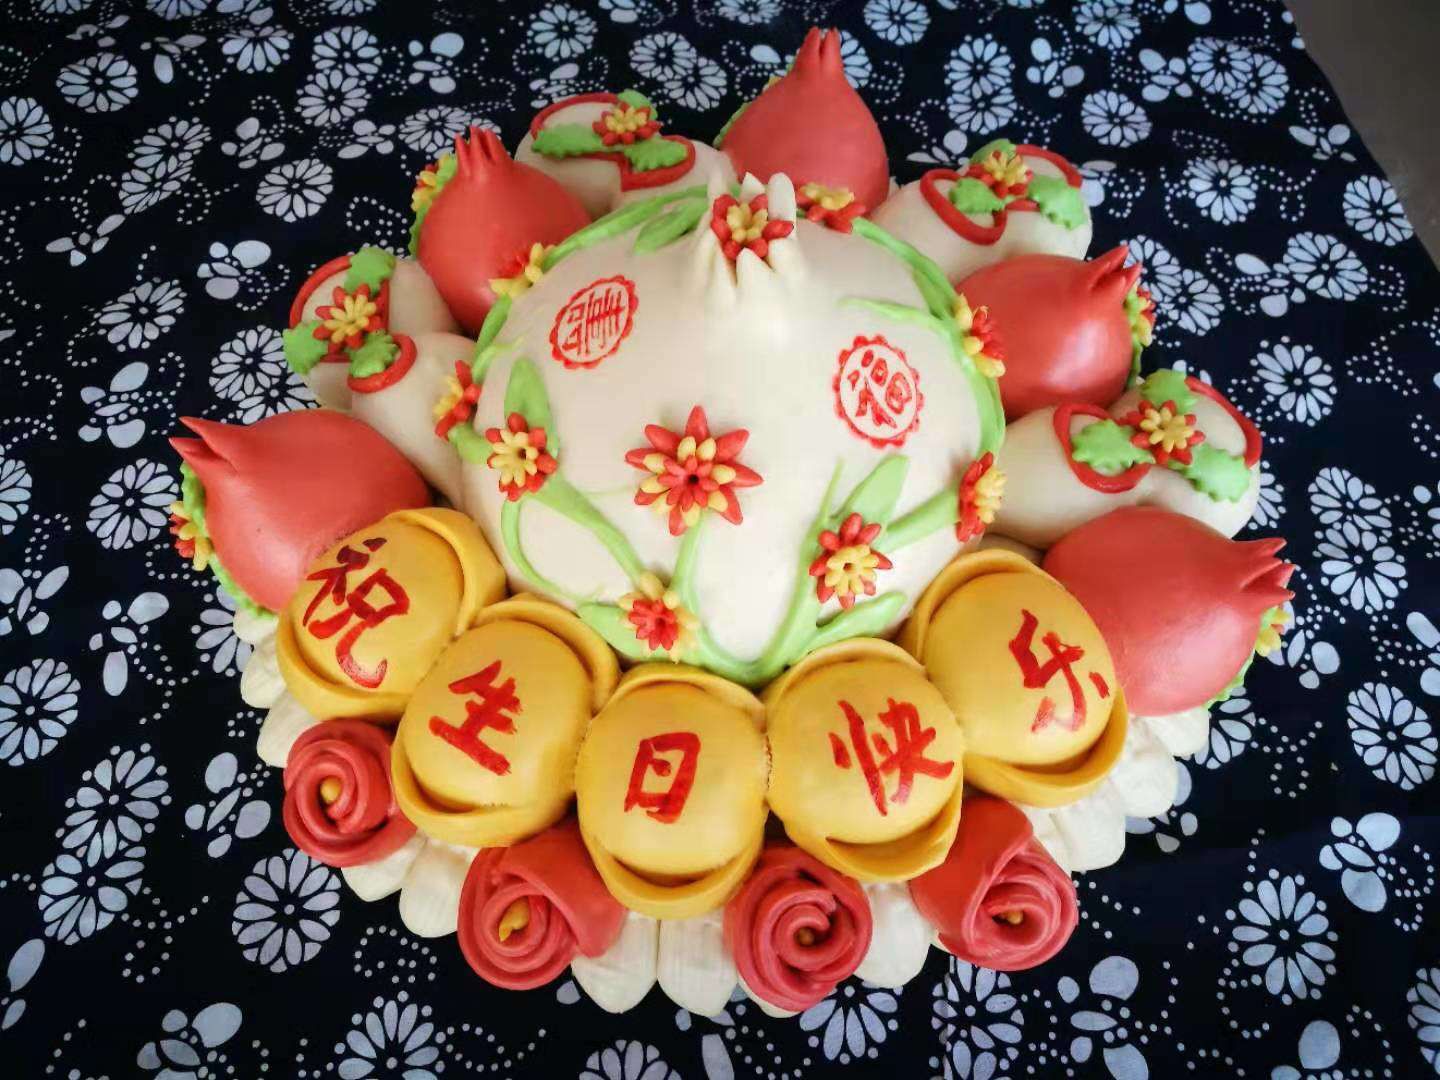 胶州寿桃蛋糕馒头～蛋糕新宠～纯果蔬纯手工制作